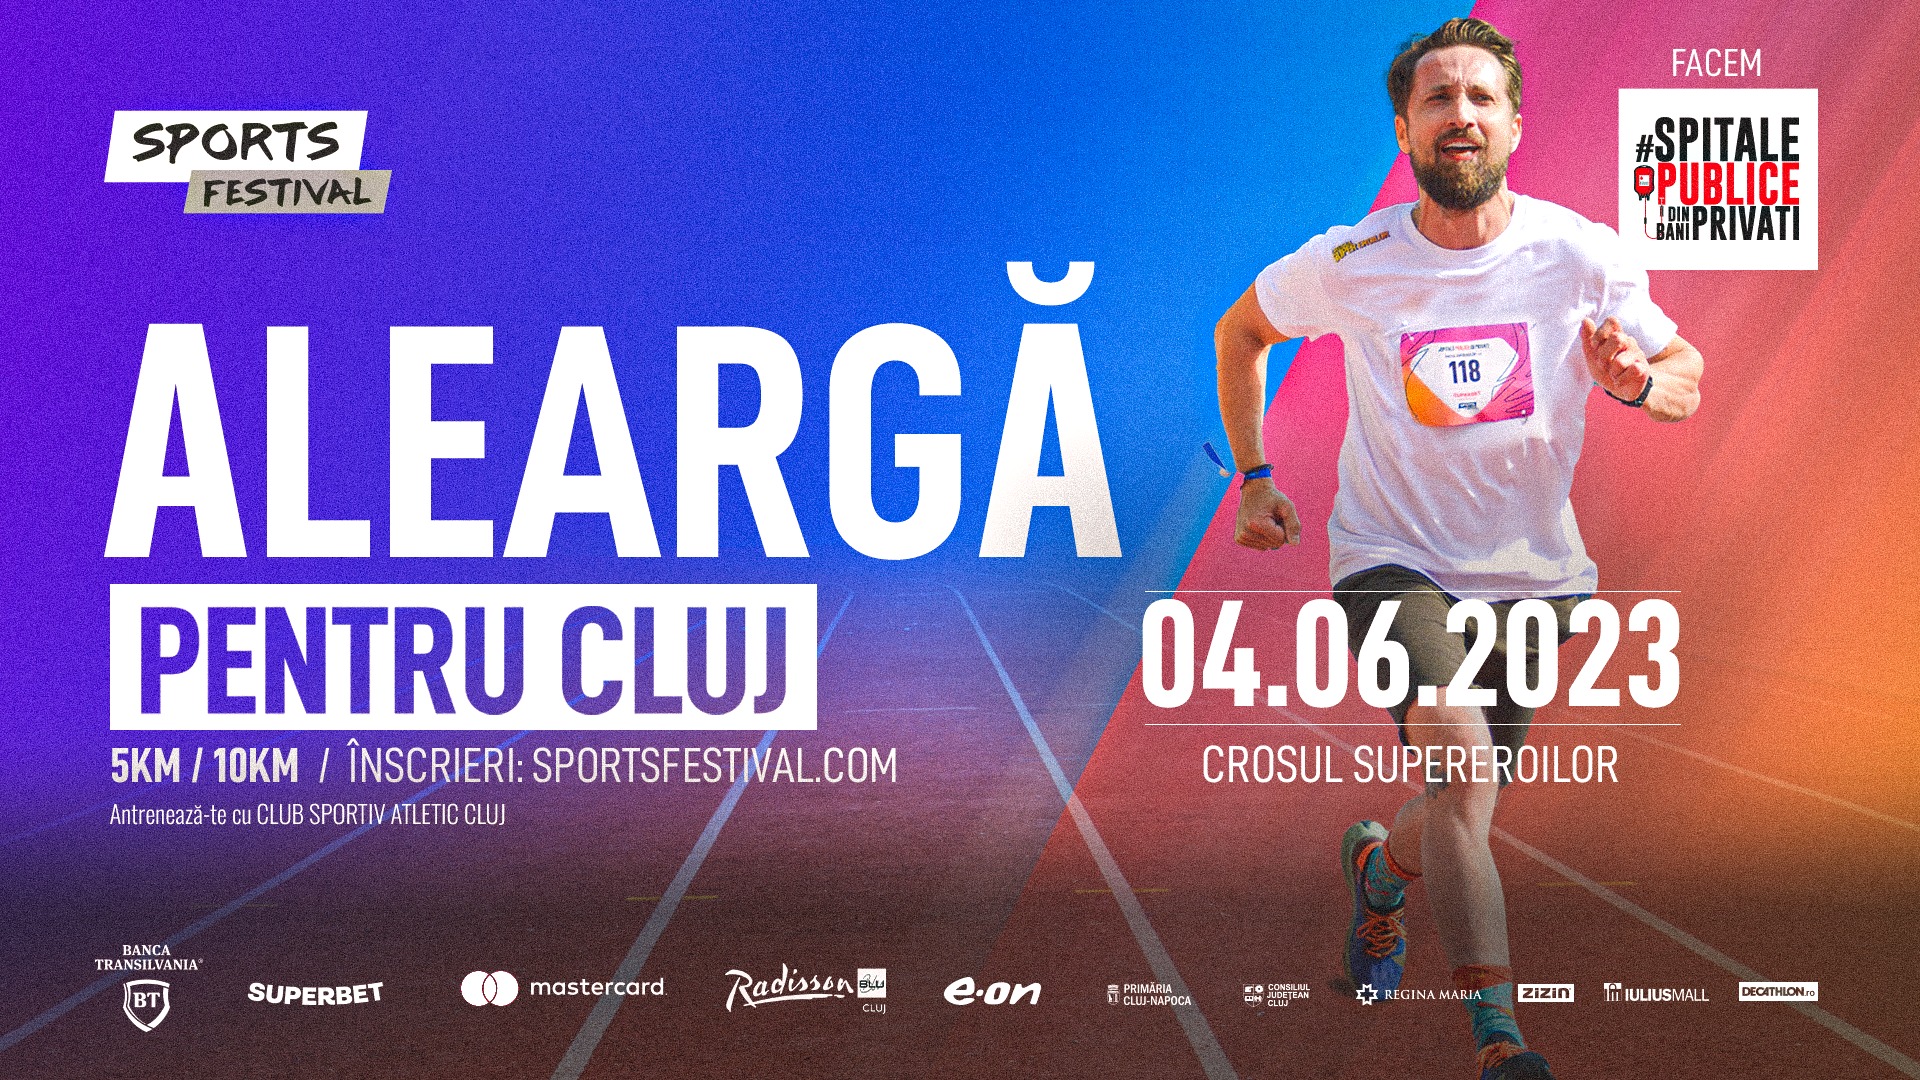 Crosul Supereroilor 2023 | Aleargă pentru Cluj!